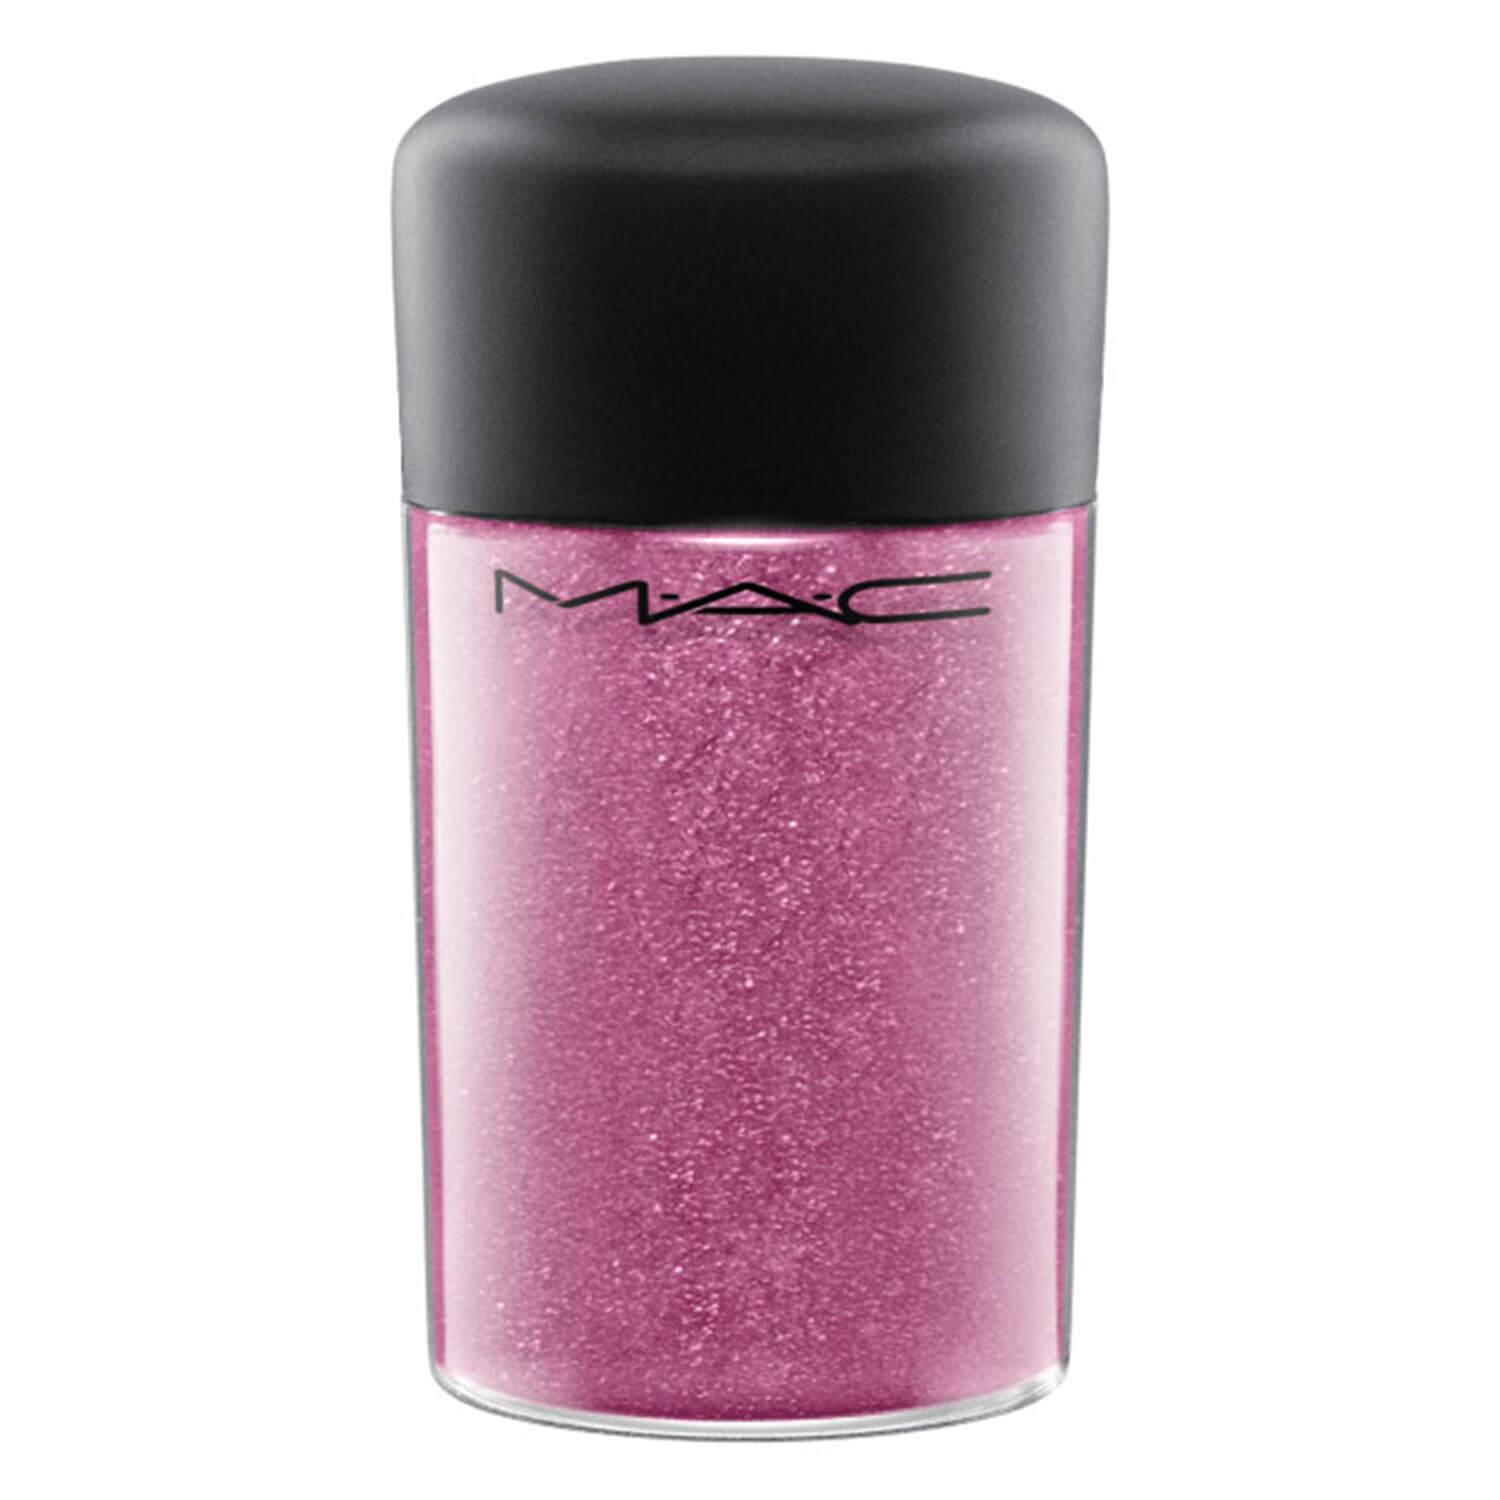 M·A·C In Monochrome - Pro Glitter Rose